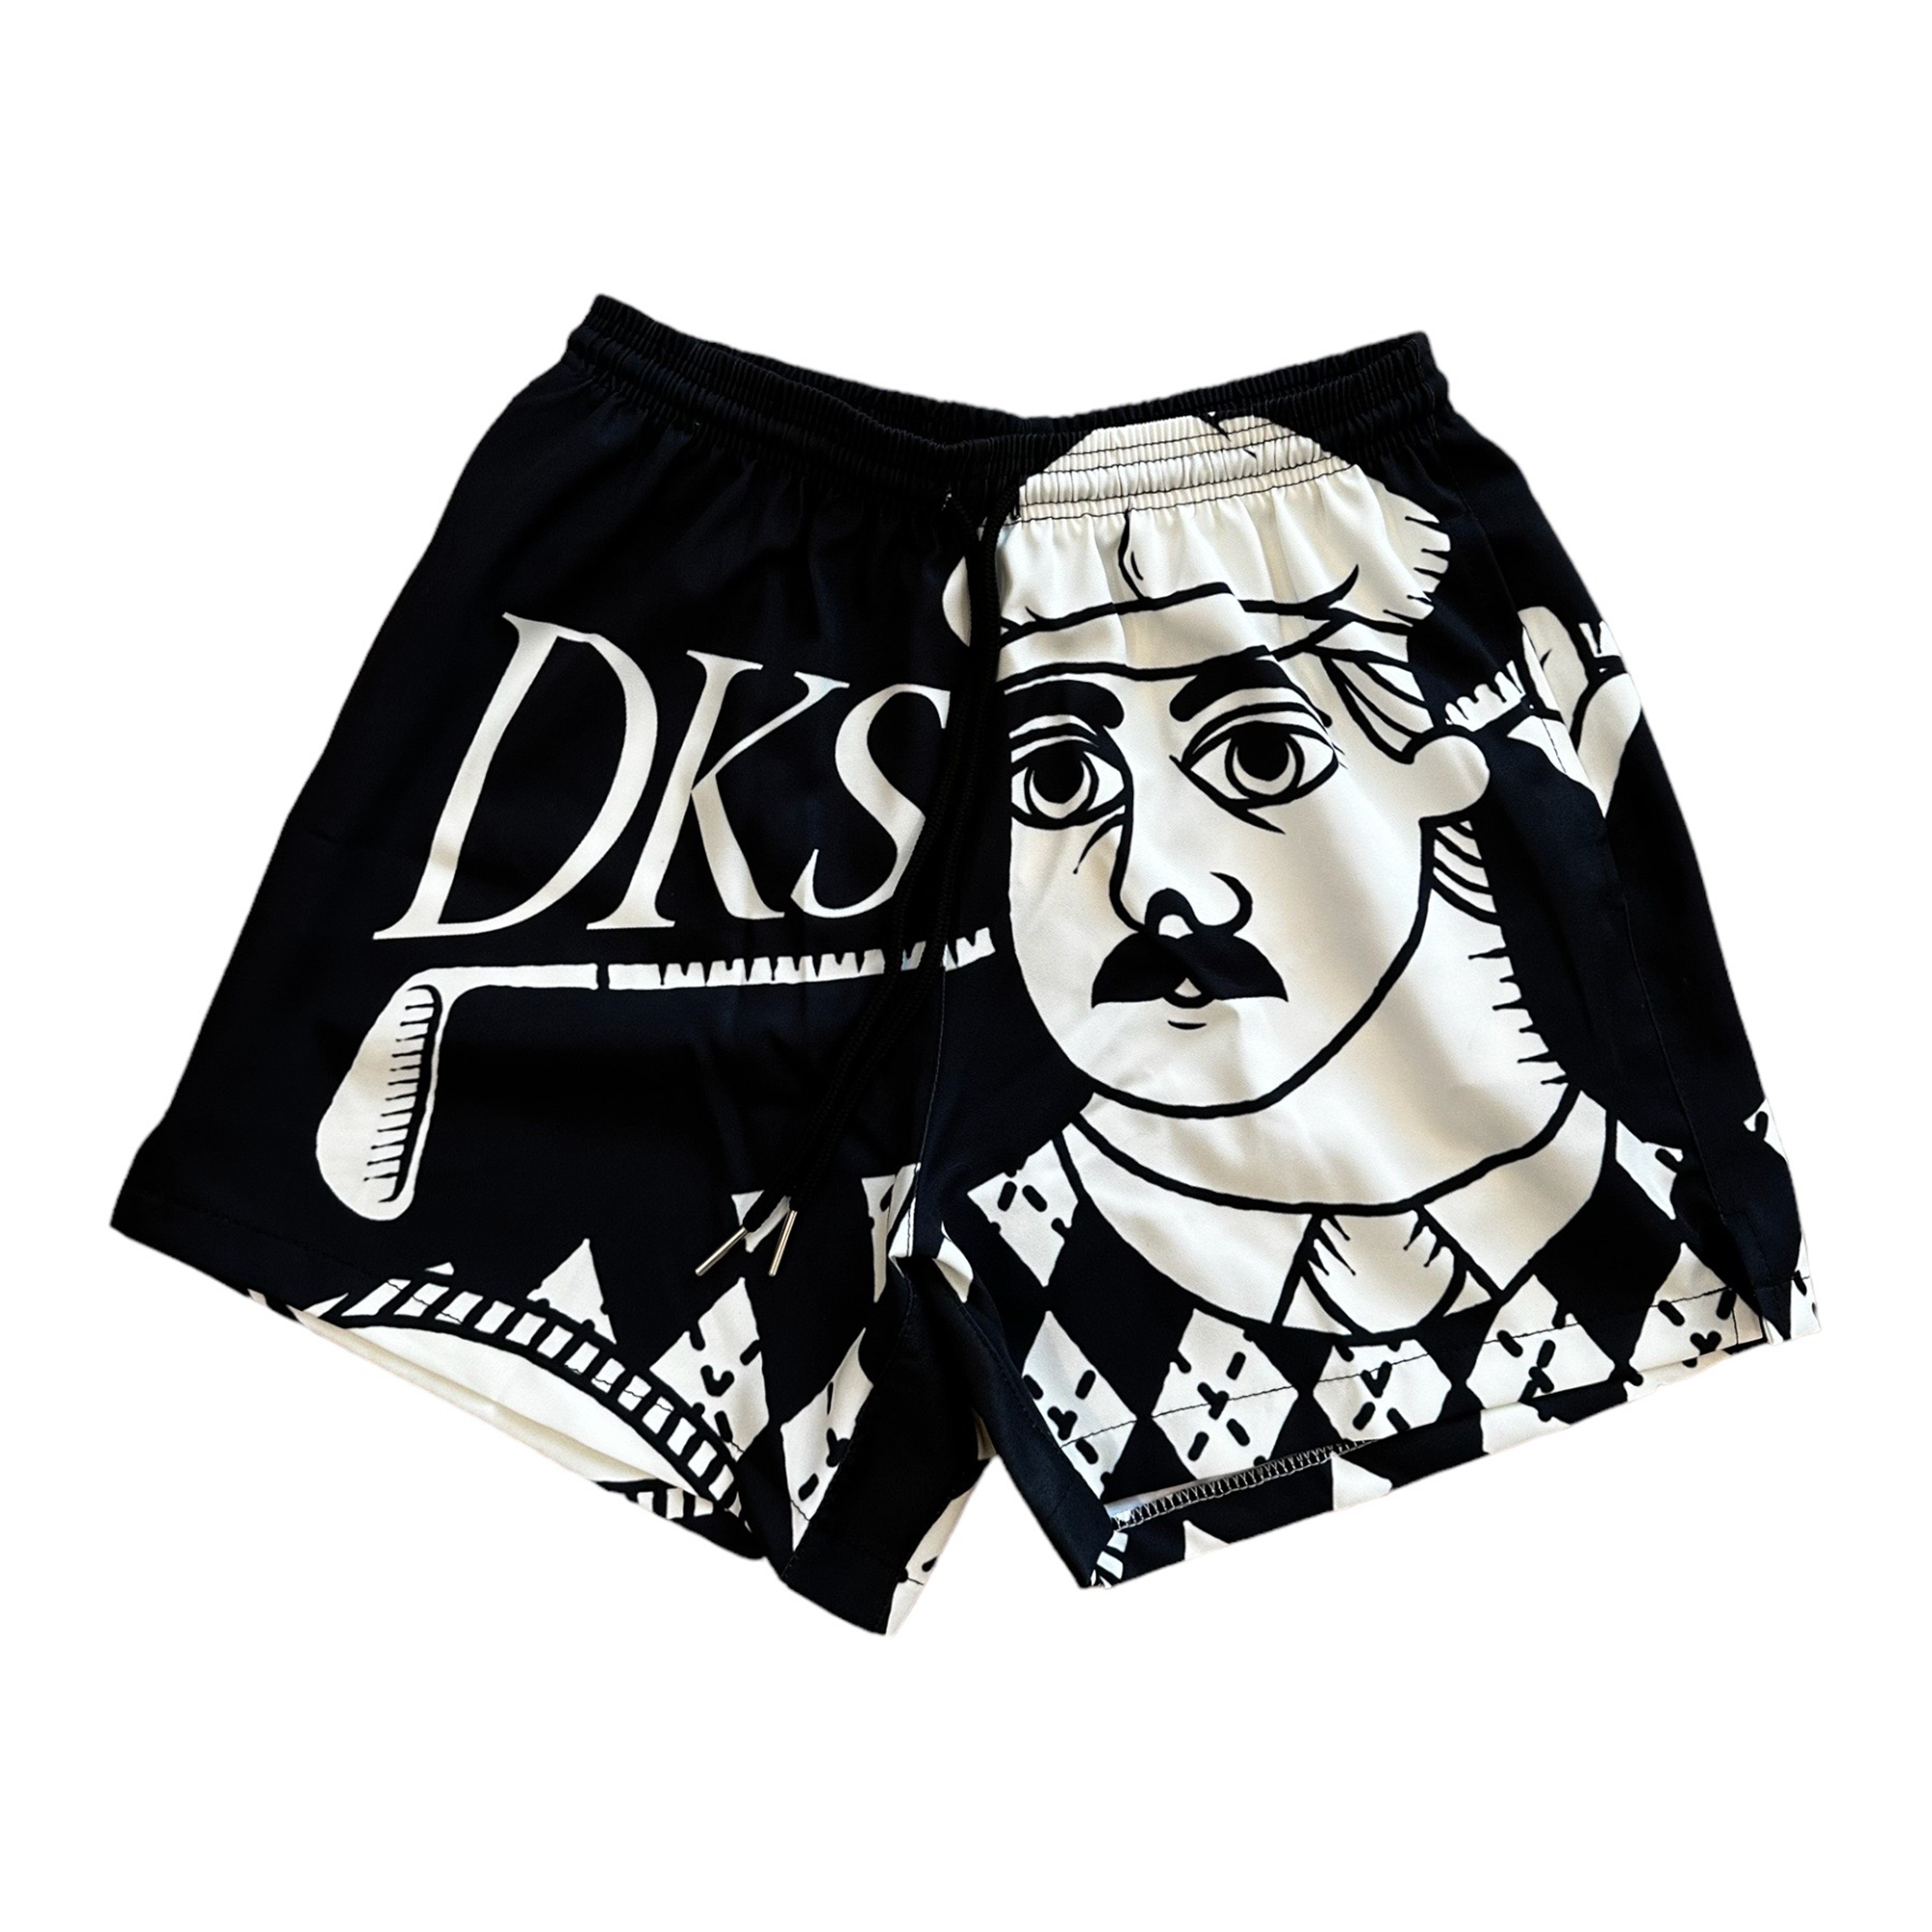 DKS "Par 3" Lounge Shorts